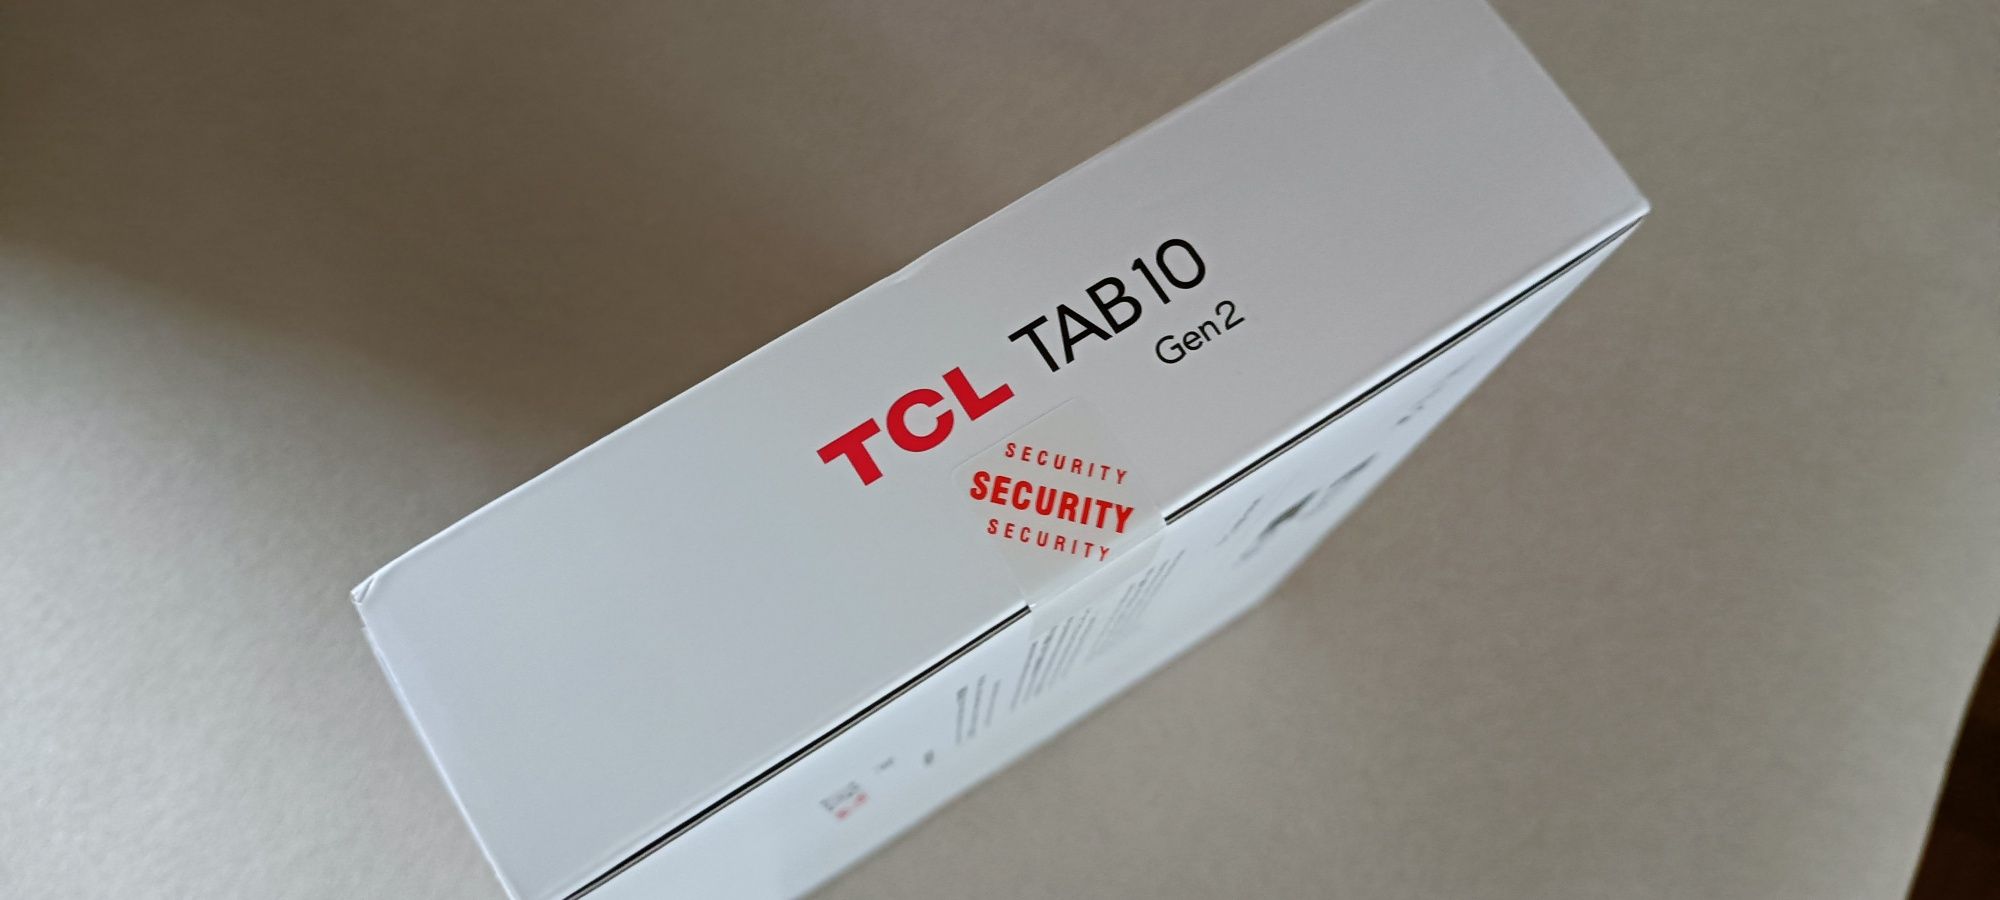 Tablet TCL TAB 10 gen2 nowy